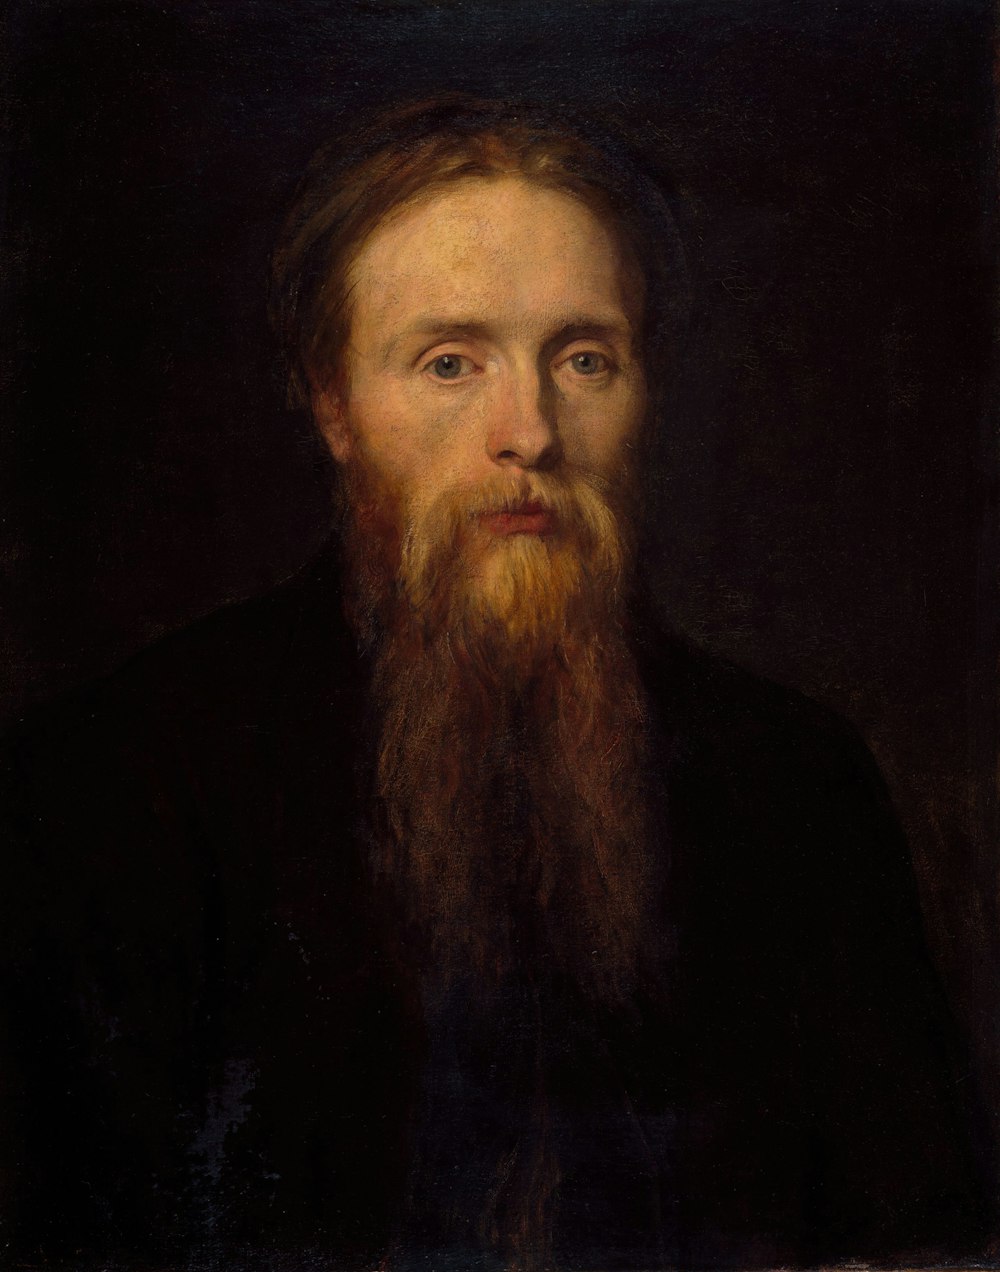 long-beard man portrait